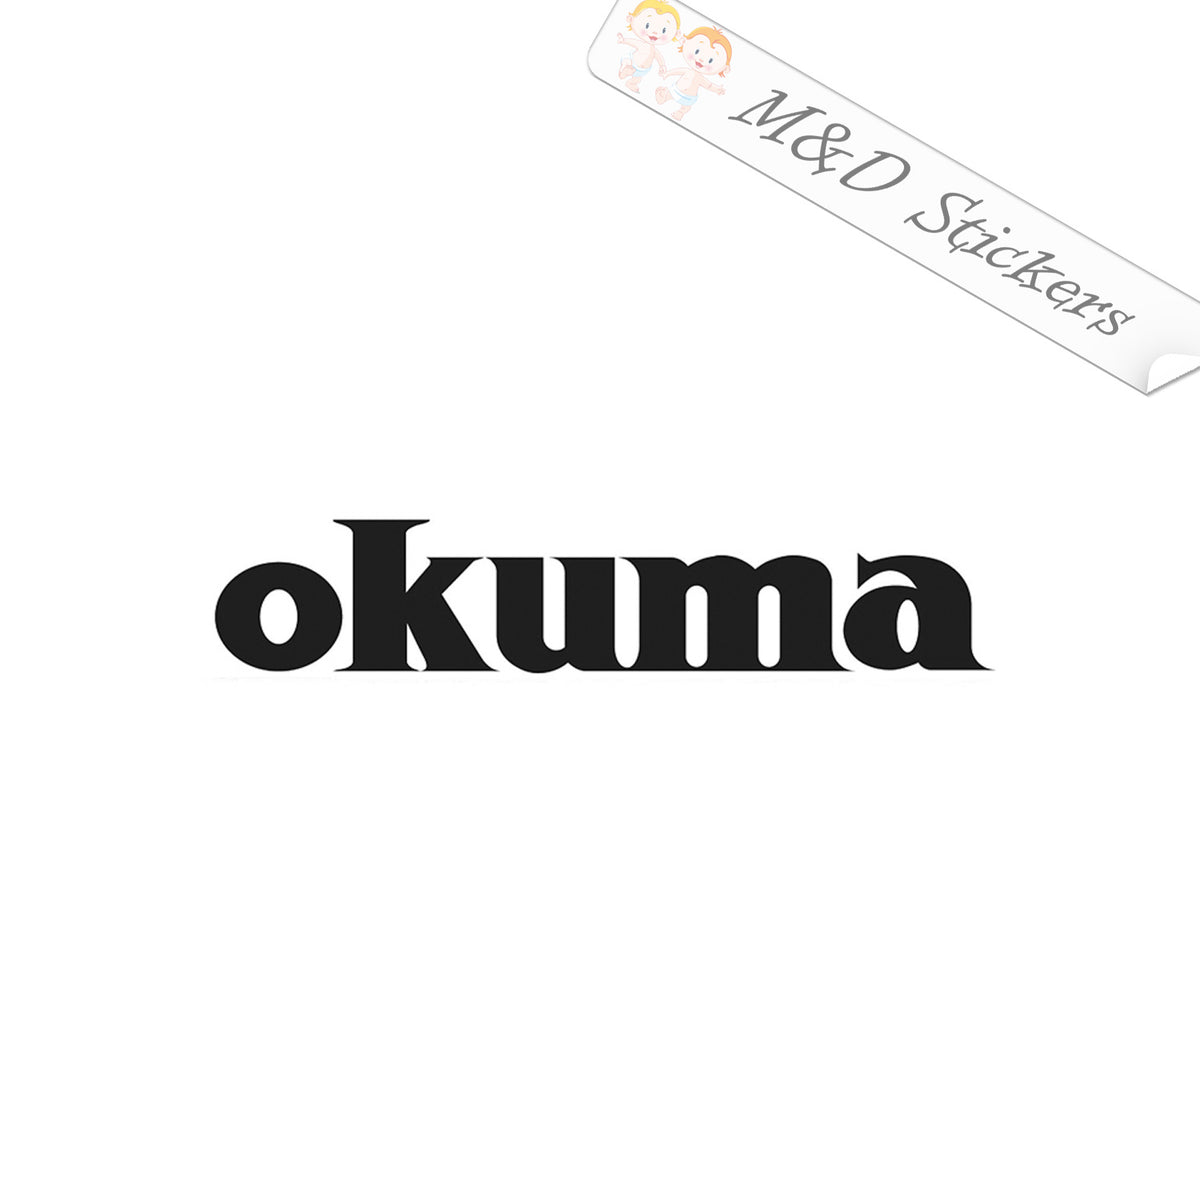 Okuma Fishing Logo (4.5